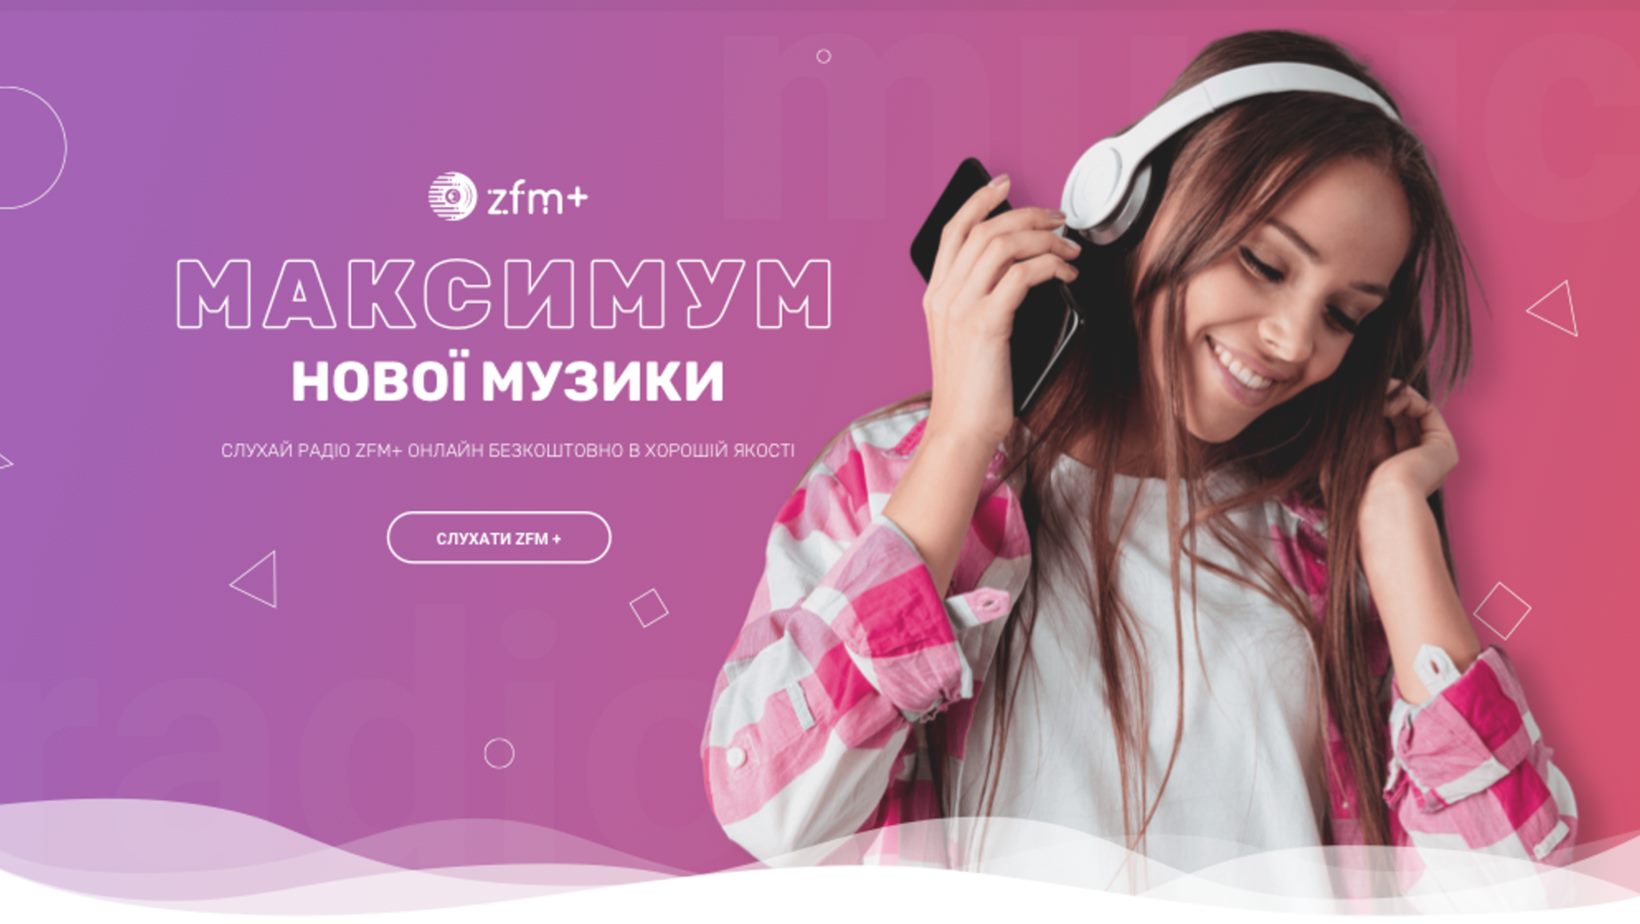 Сучасні хіти та гарний настрій гарантовані: сайт радіо ZFM+ запрацював на Закарпатті